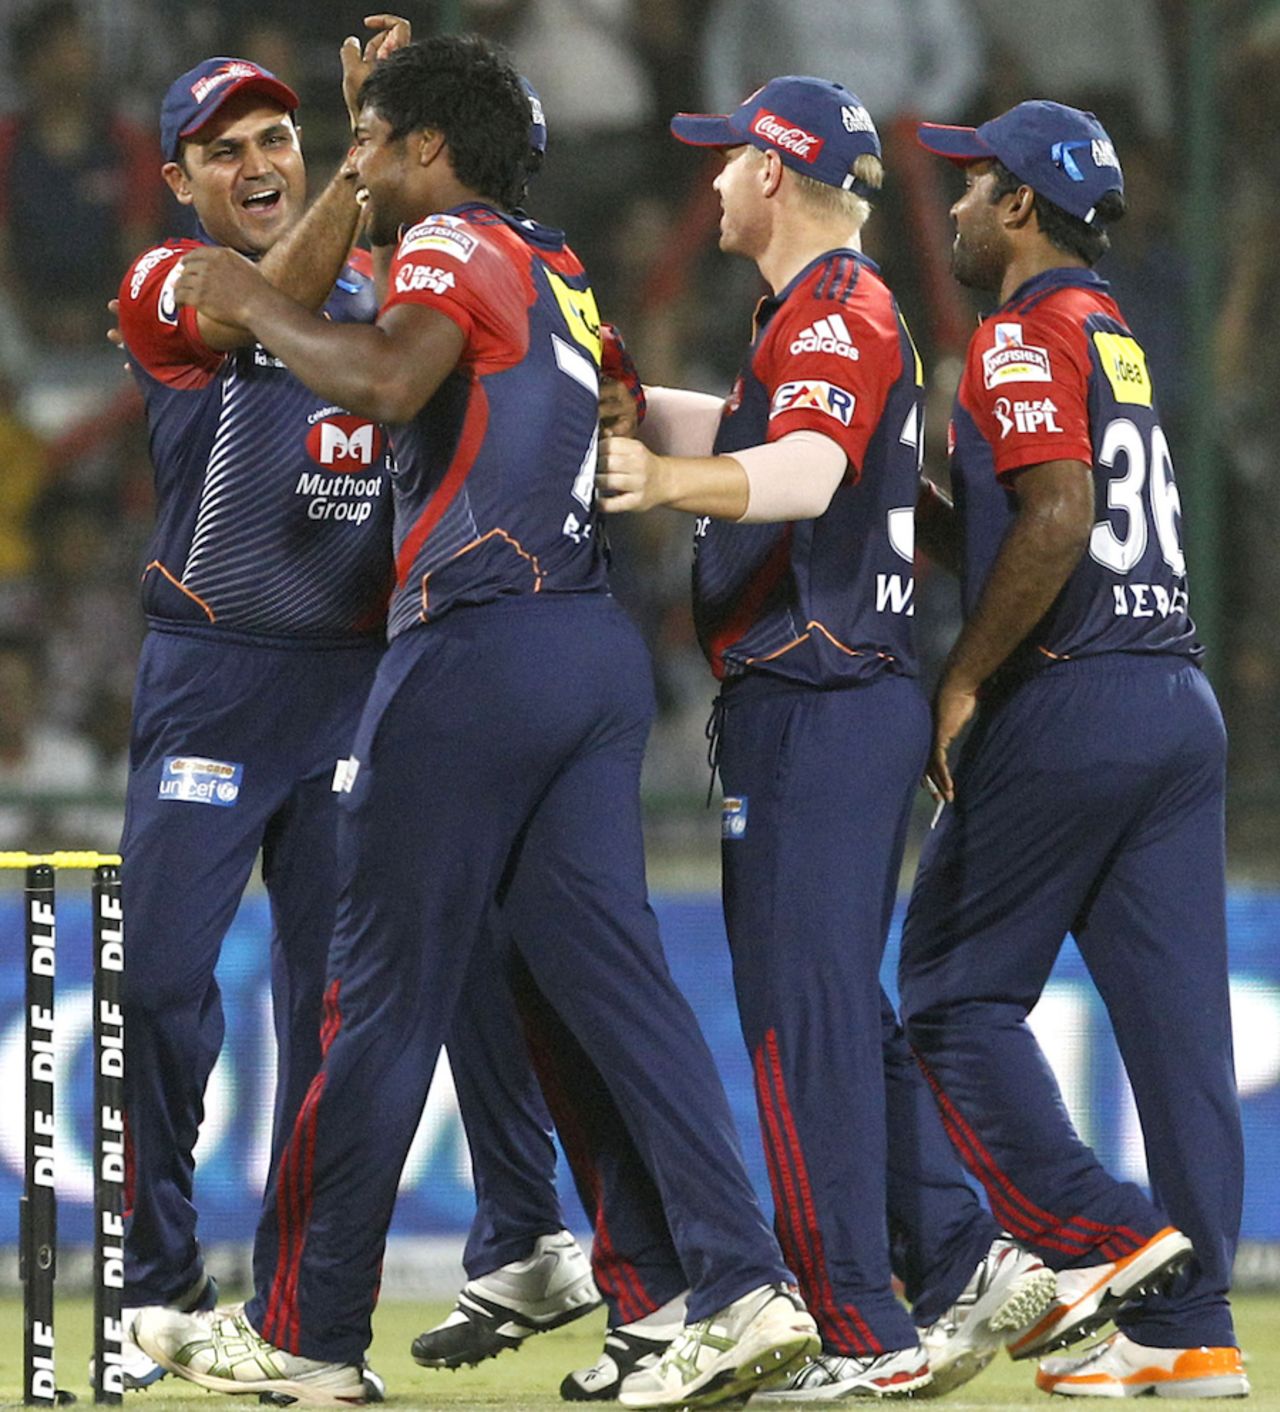 Varun Aaron dismissed Shaun Marsh with his first ball, Delhi Daredevils v Kings XI Punjab, IPL, Delhi, May 15, 2012